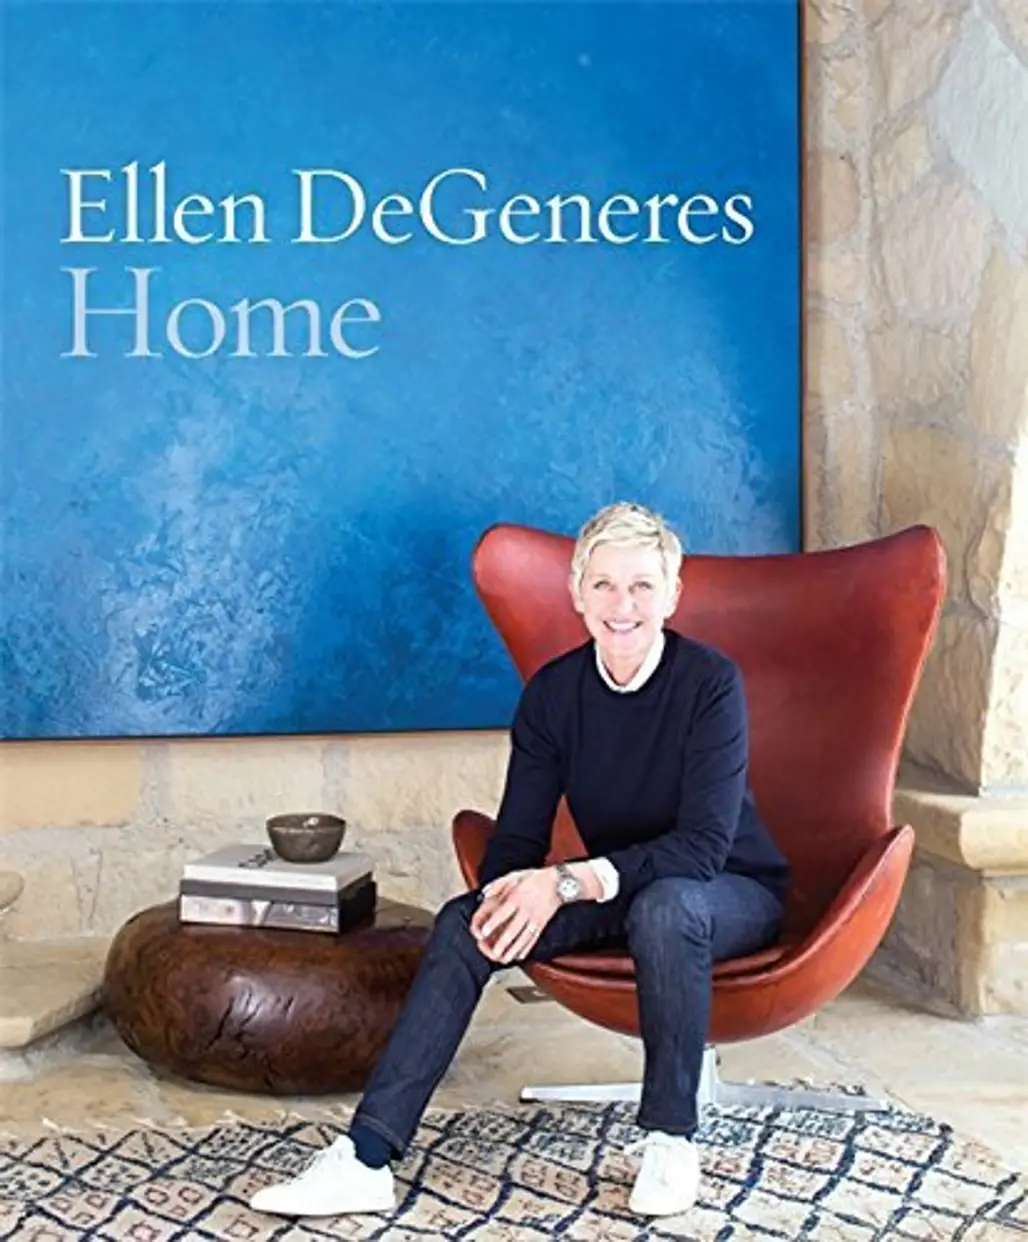 Home: Ellen DeGeneres